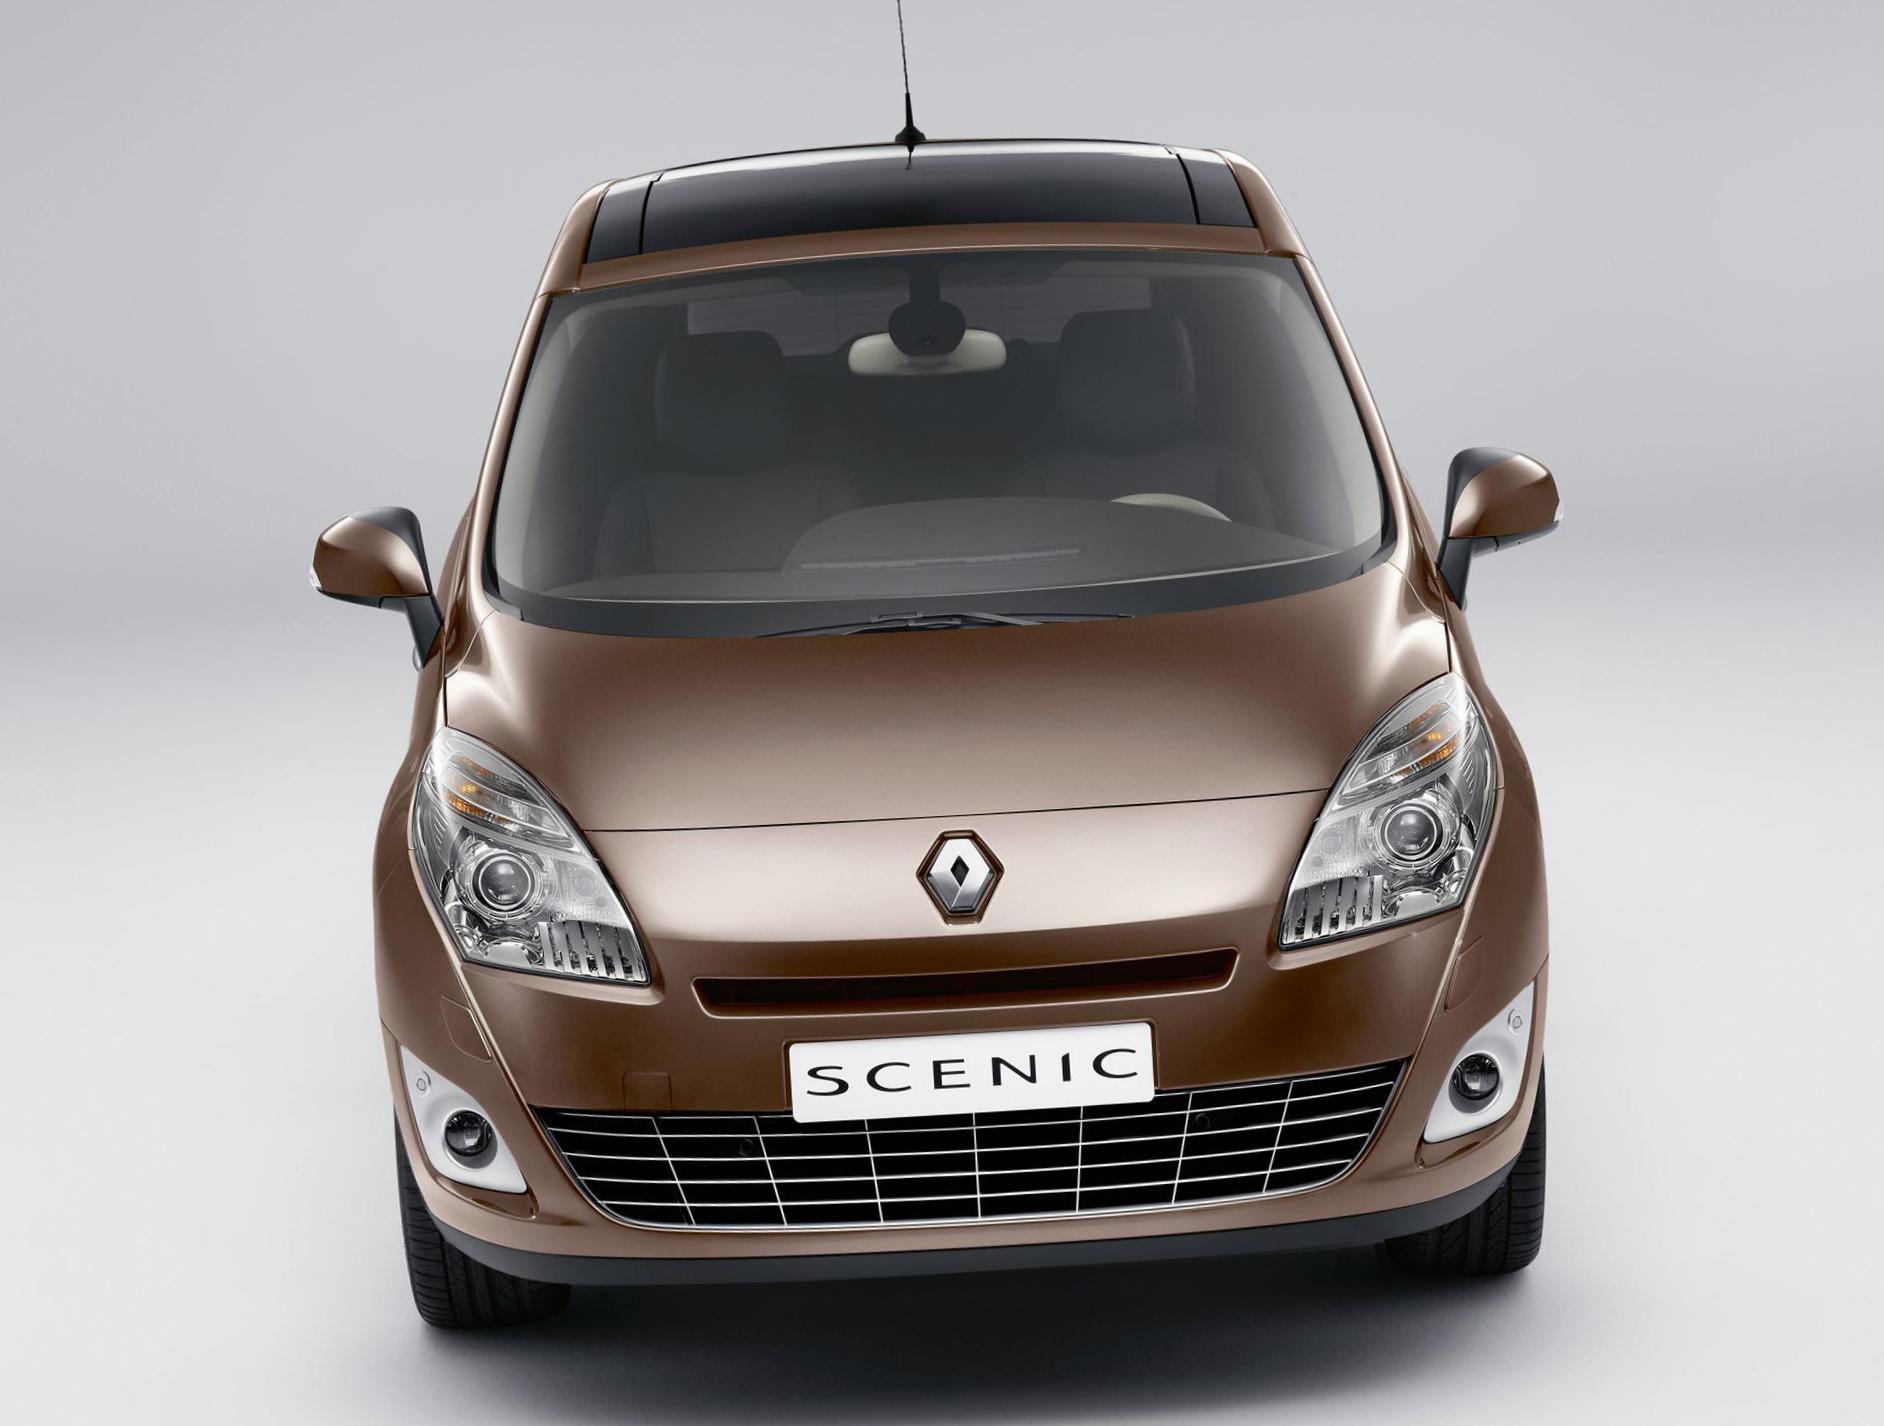 Grand Scenic Renault reviews sedan